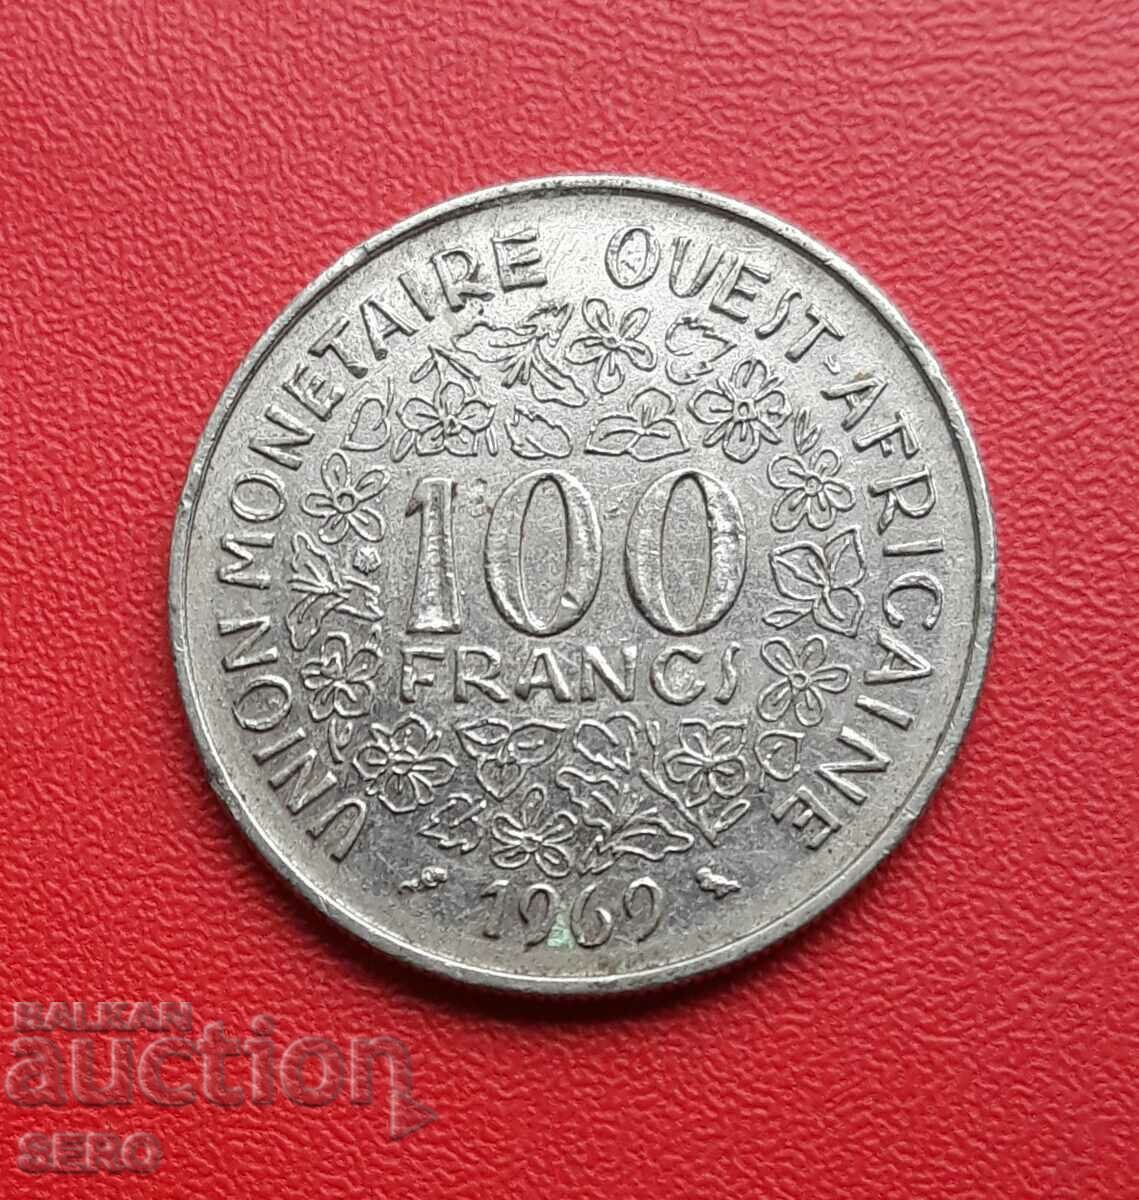 Africa de Vest Franceză - 100 de franci 1969